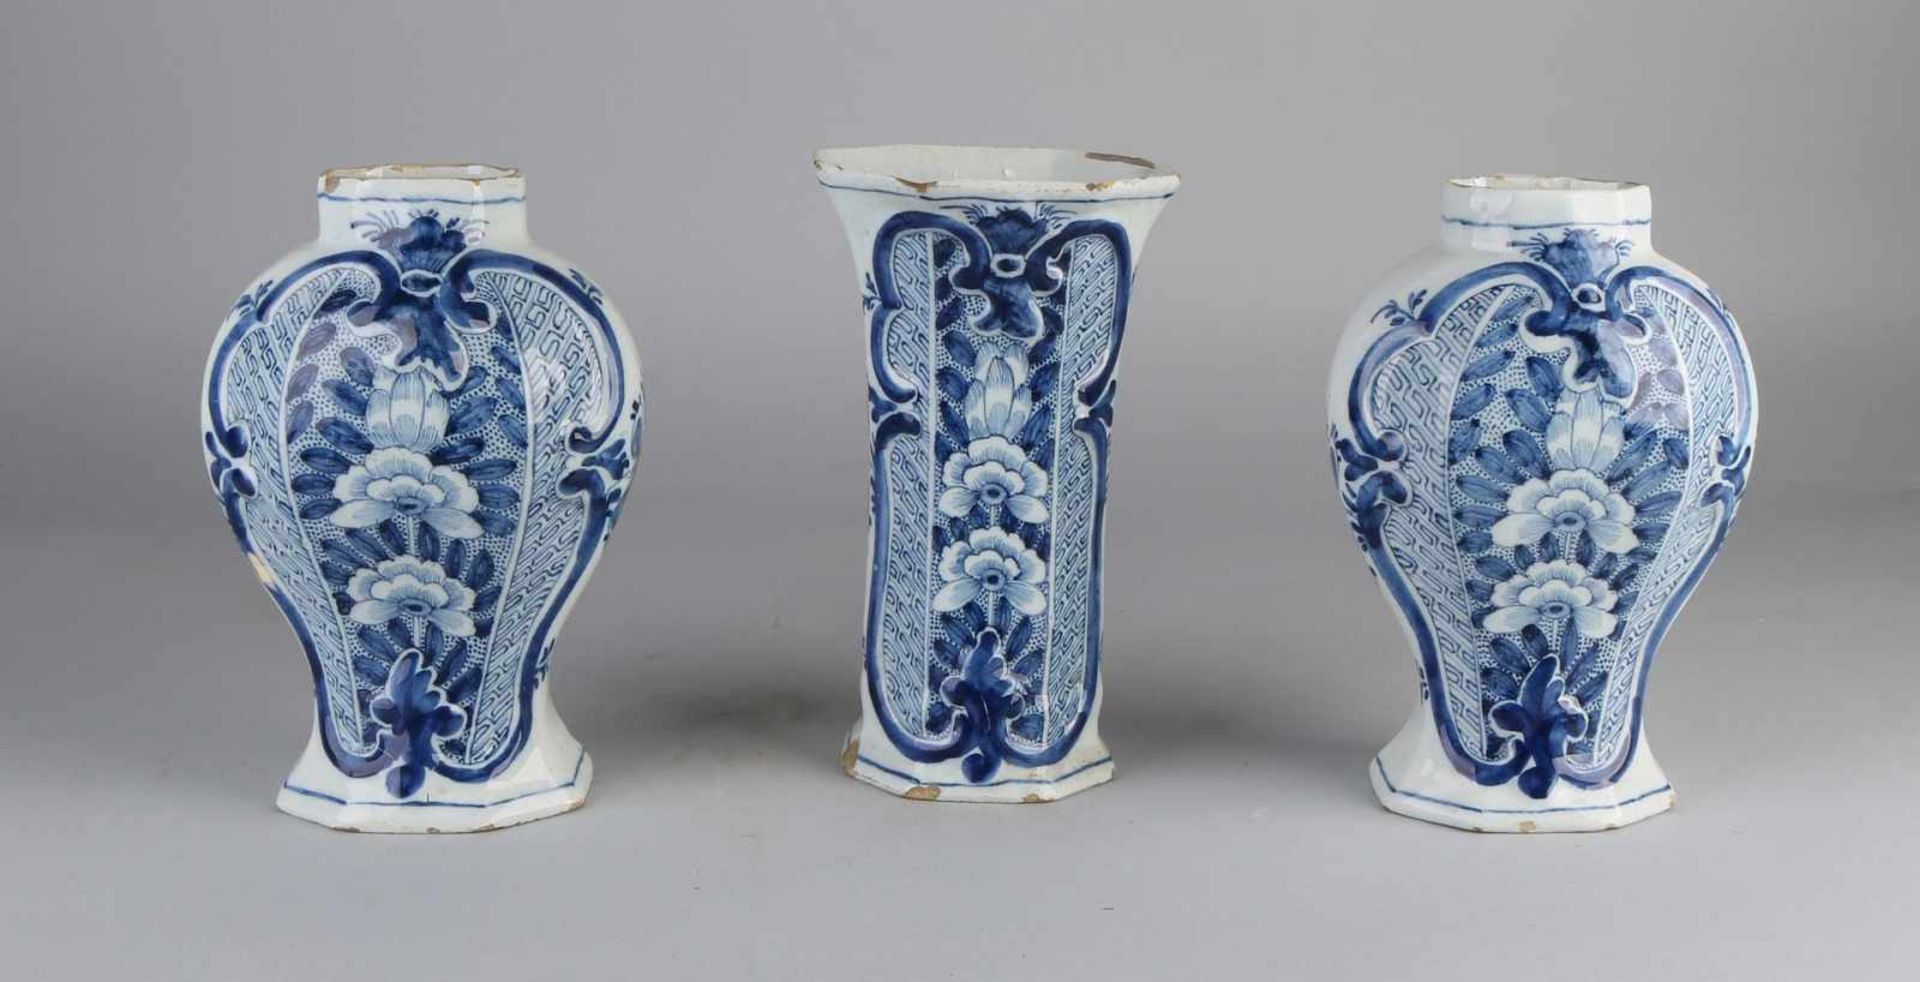 Ewer, gekennzeichnet mit Delfter Schrankset. 18. Jahrhundert. Ohne Deckel. Eine Vase geklebt +